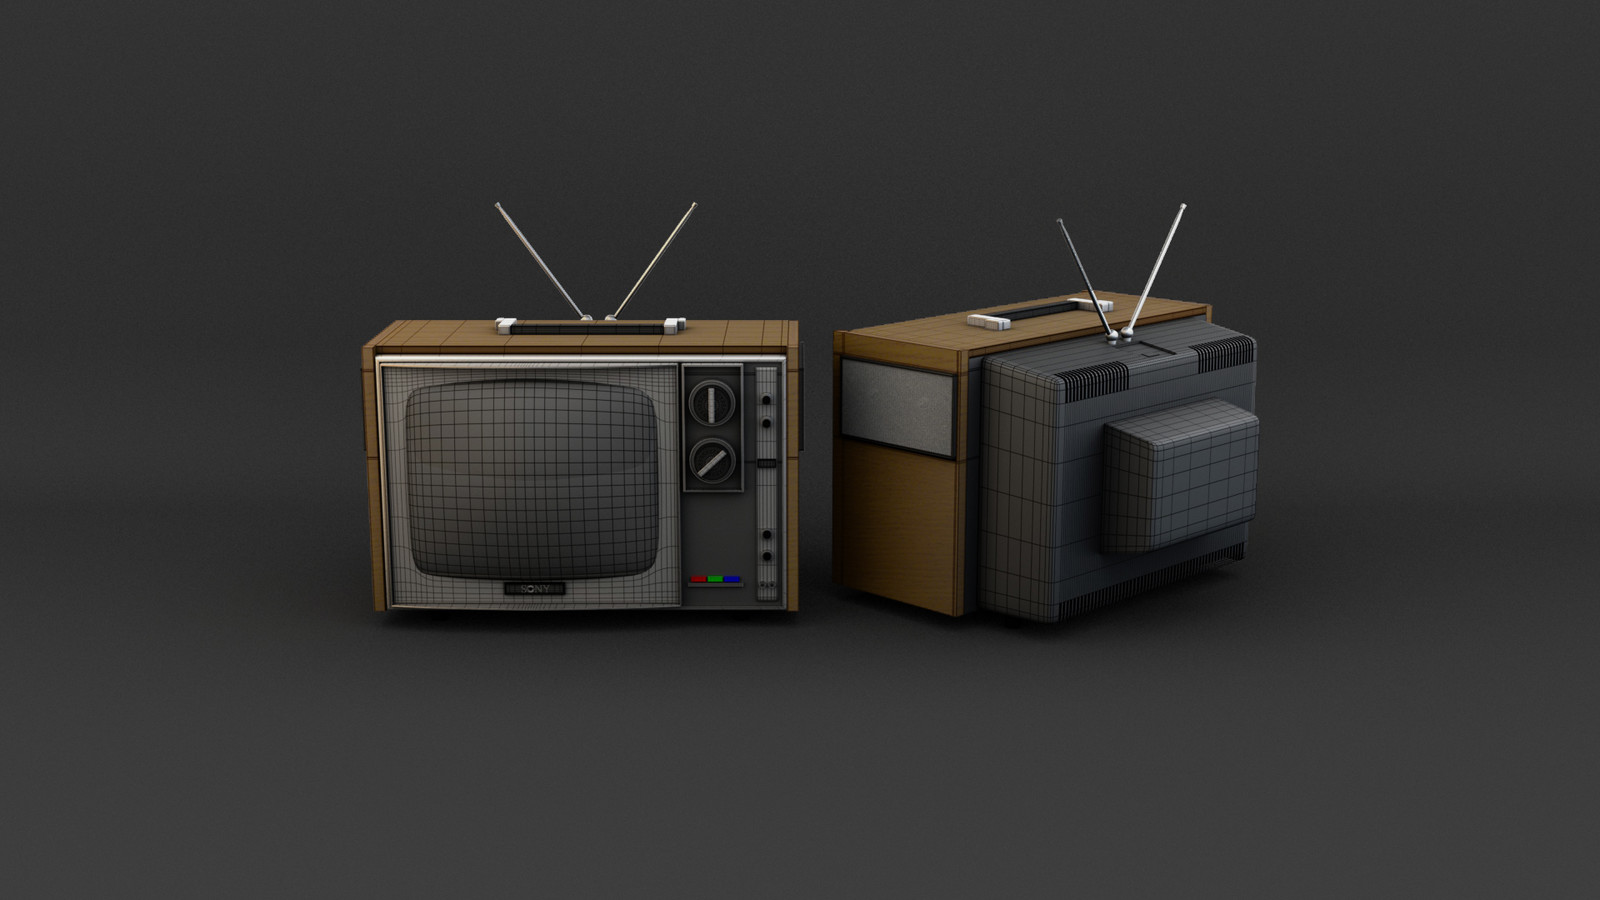 Back tv. TV back. Old TV. Old TV back. Retro TV Side.